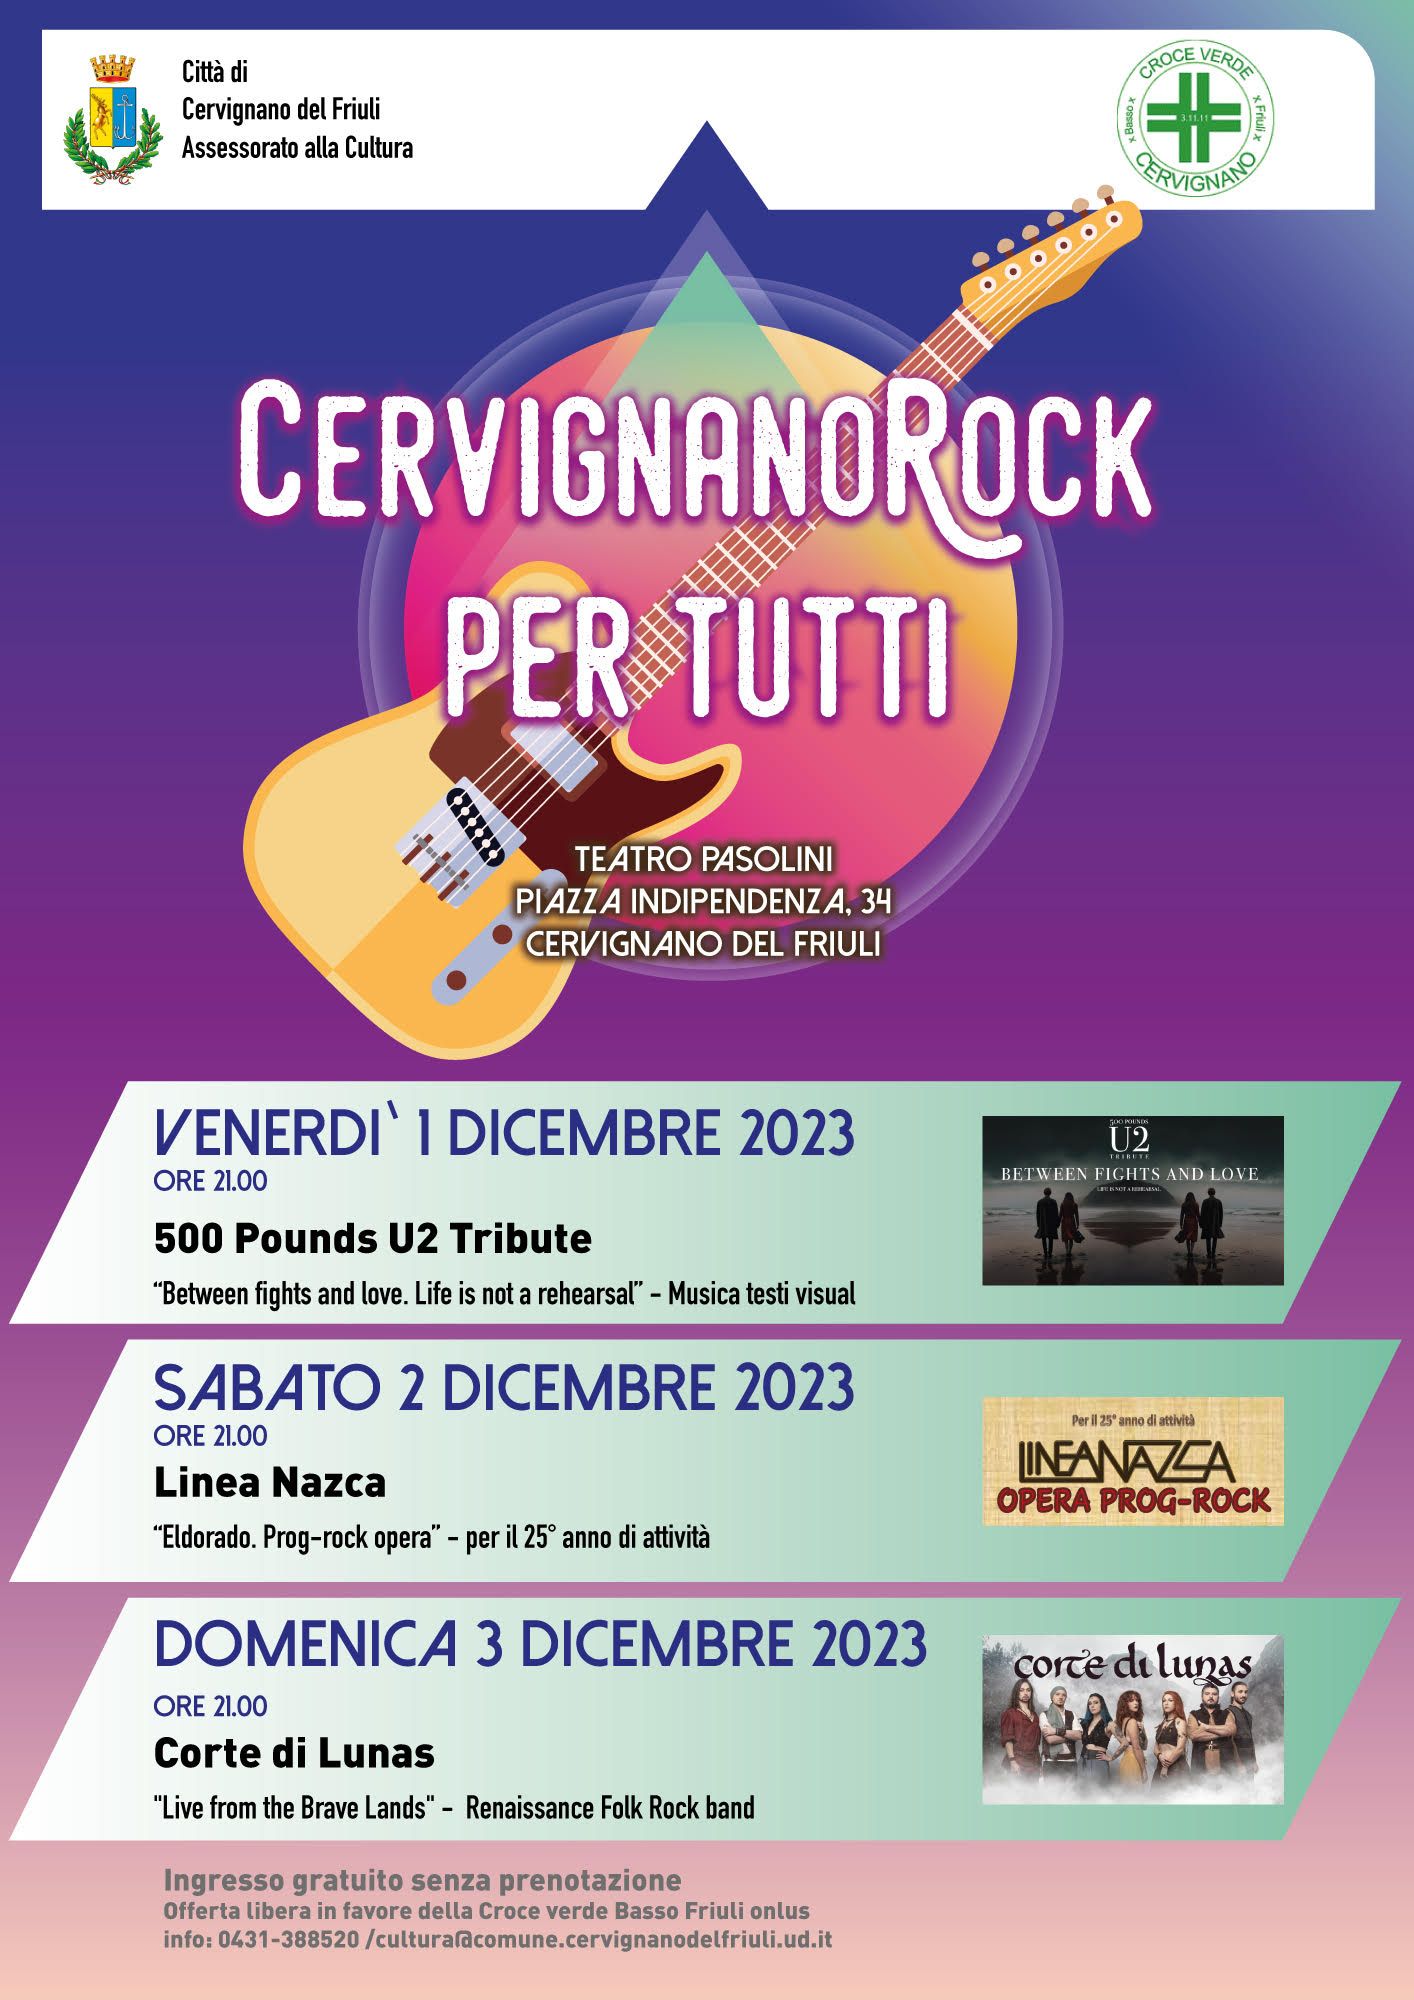 CERVIGNANO ROCK PER TUTTI 1, 2, 3 dicembre 2023 alle ore 21.00 Teatro Pasolini Piazza Indipendenza, 34 Cervignano del Friuli (UD)